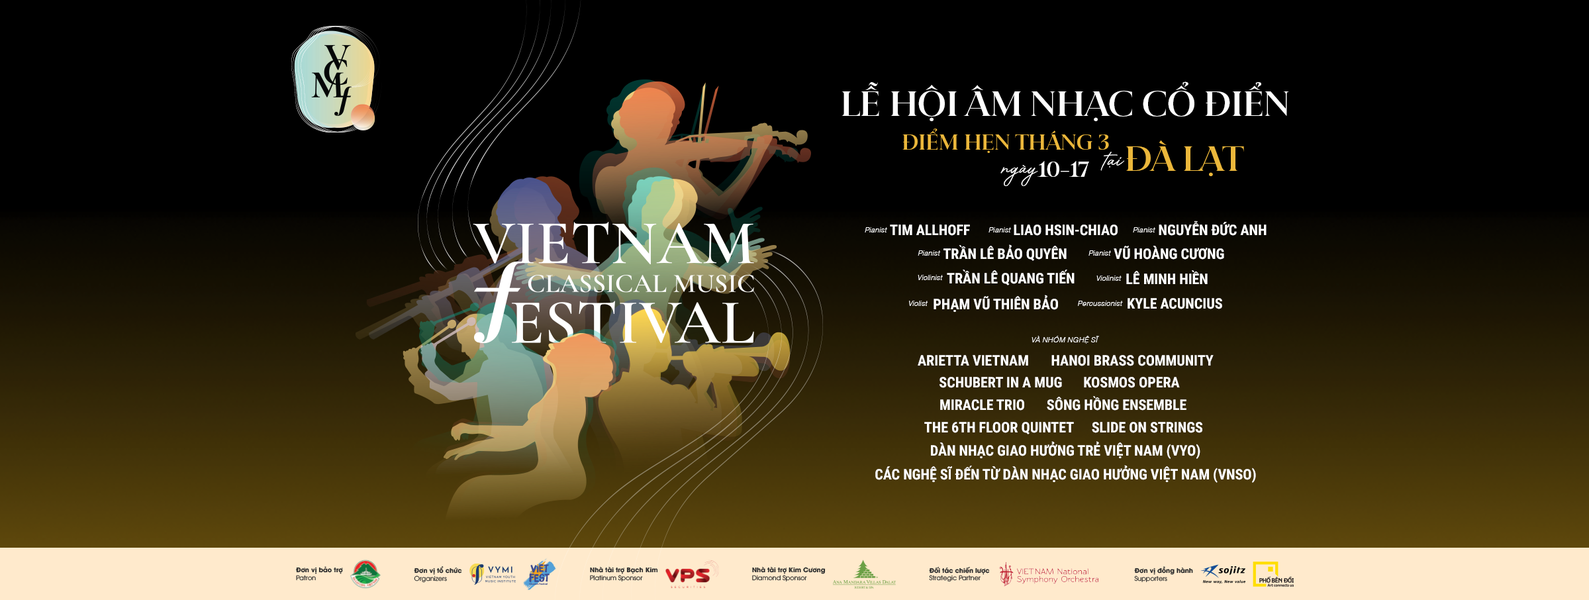 Vietnam Classical Music Festival